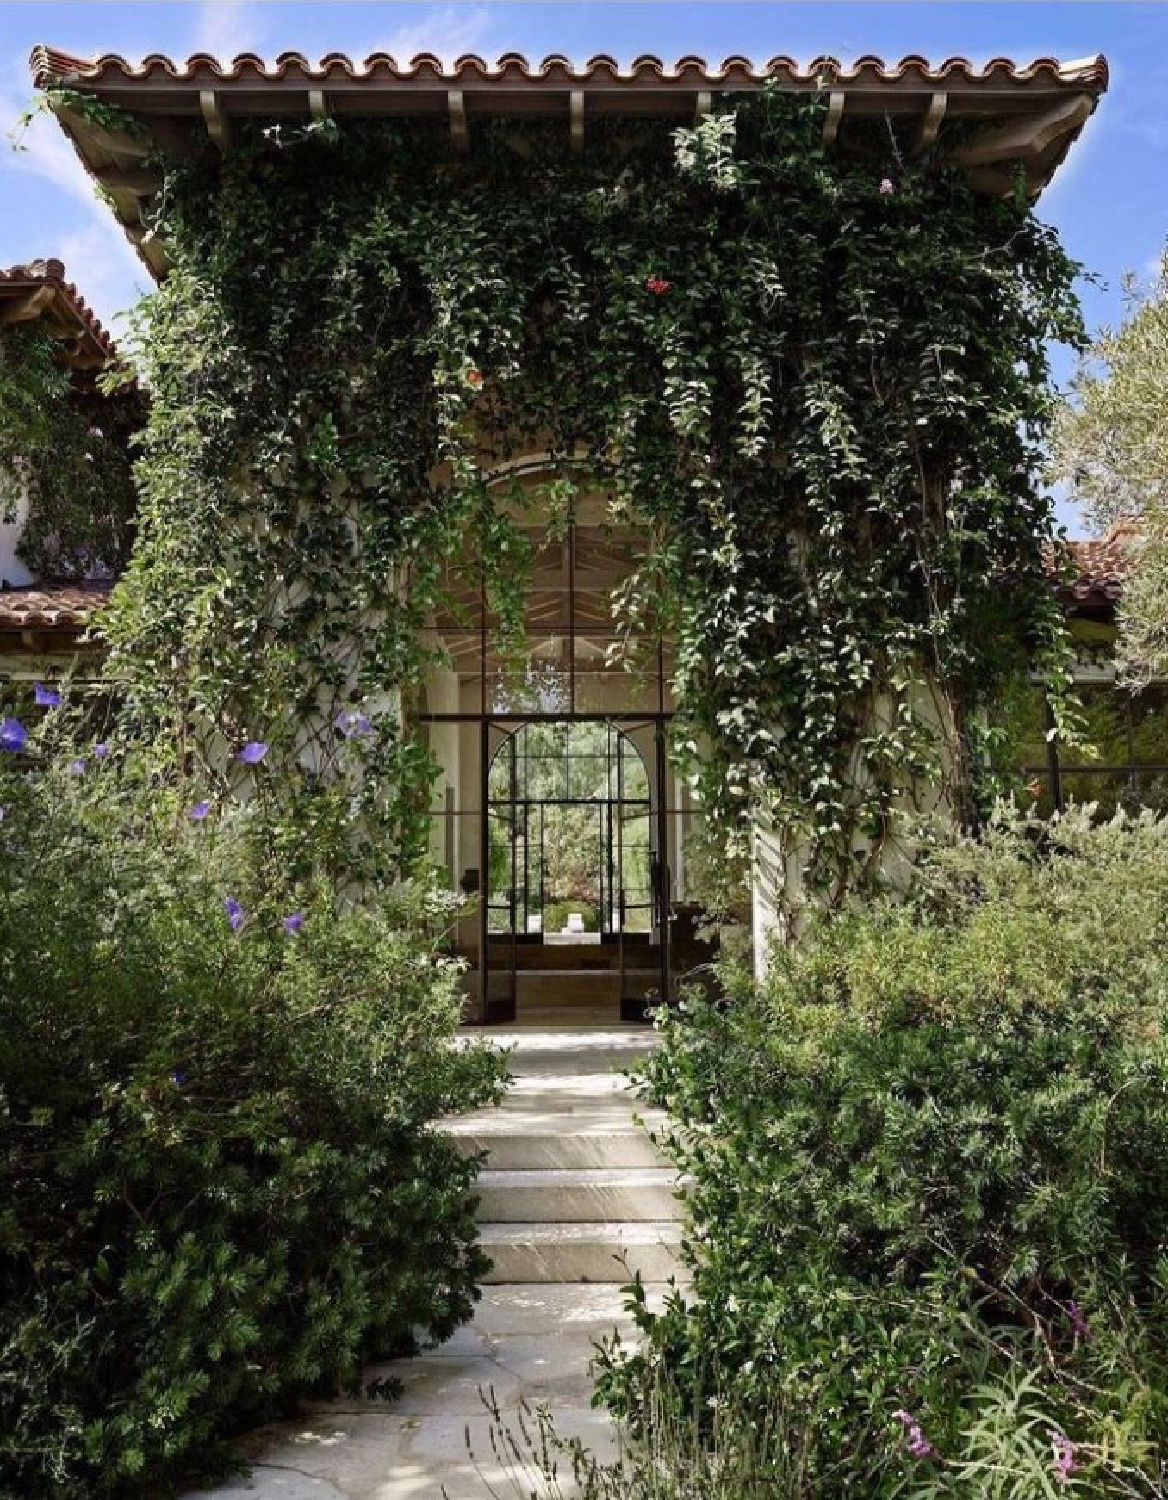 Lush green garden, stone steps, and a Mediterranean timeless home - @worldarchitectureinterior.